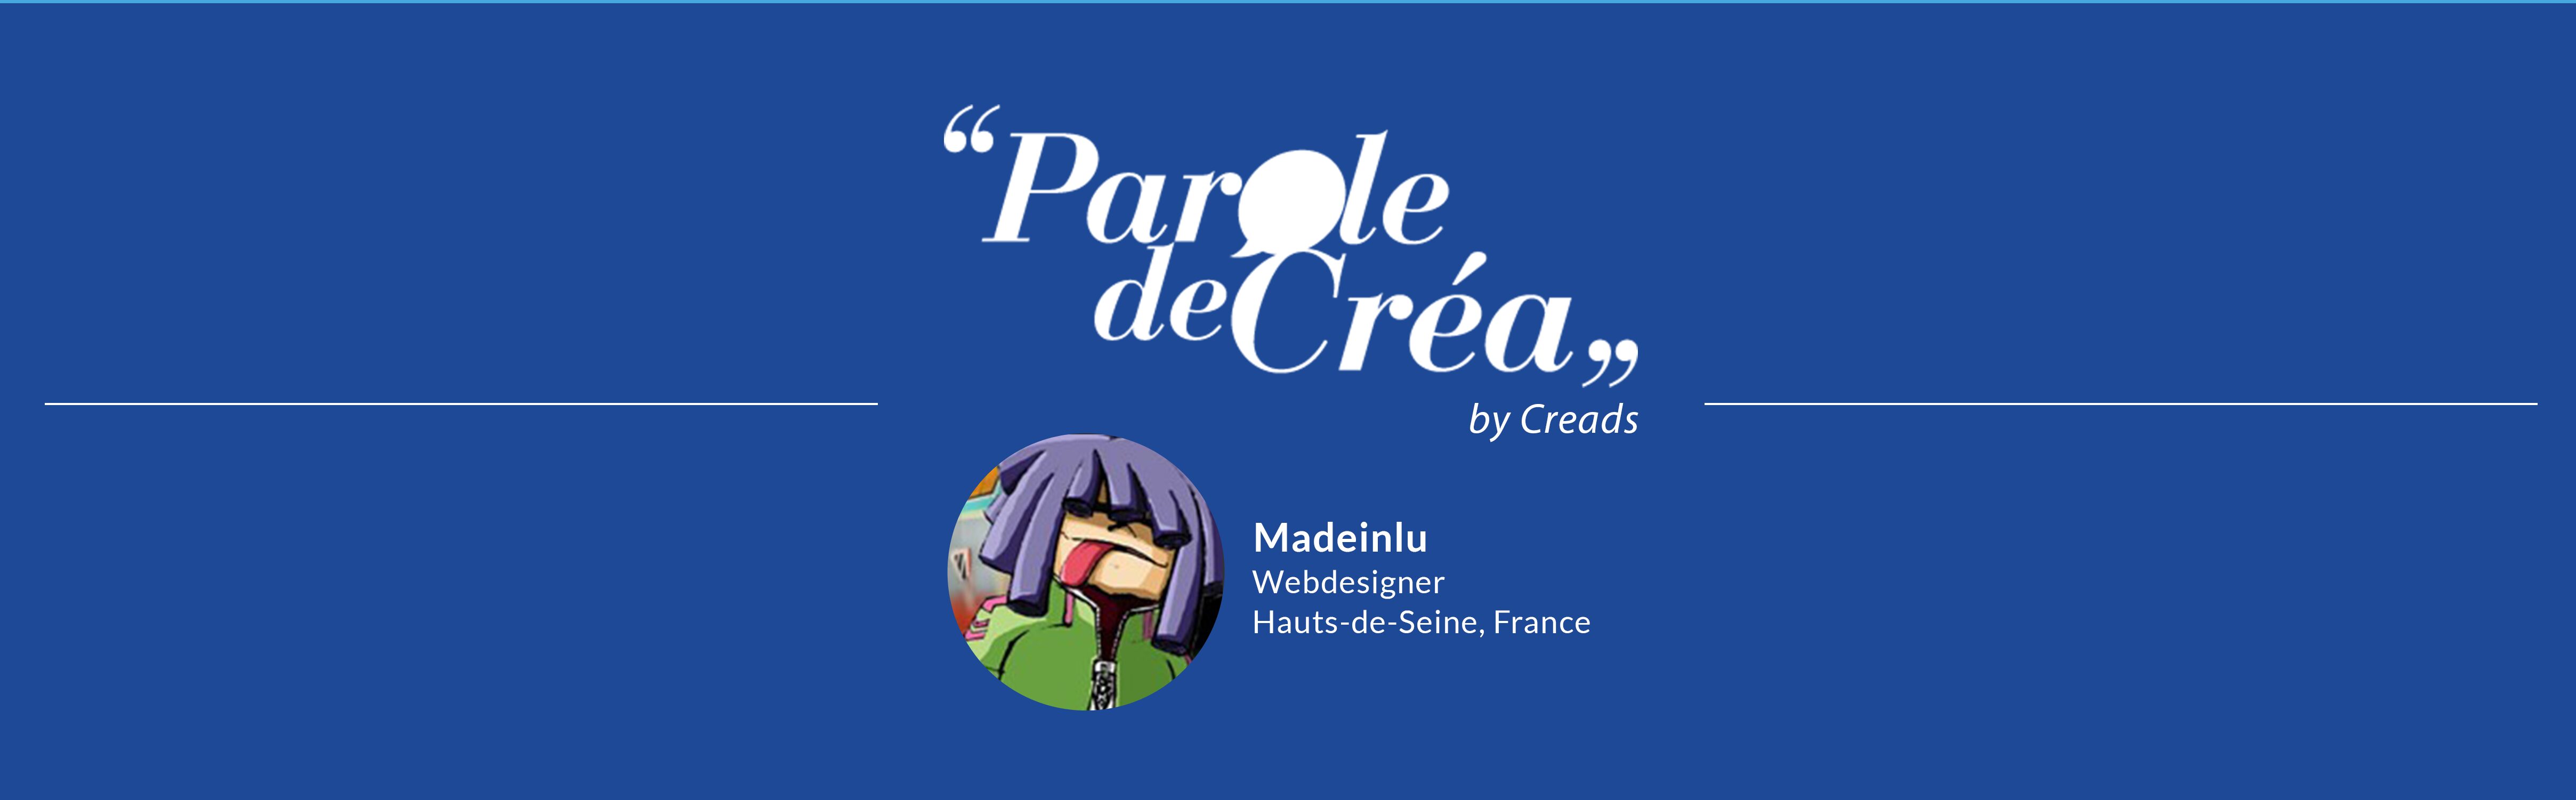 Madeinlu Webdesigner France